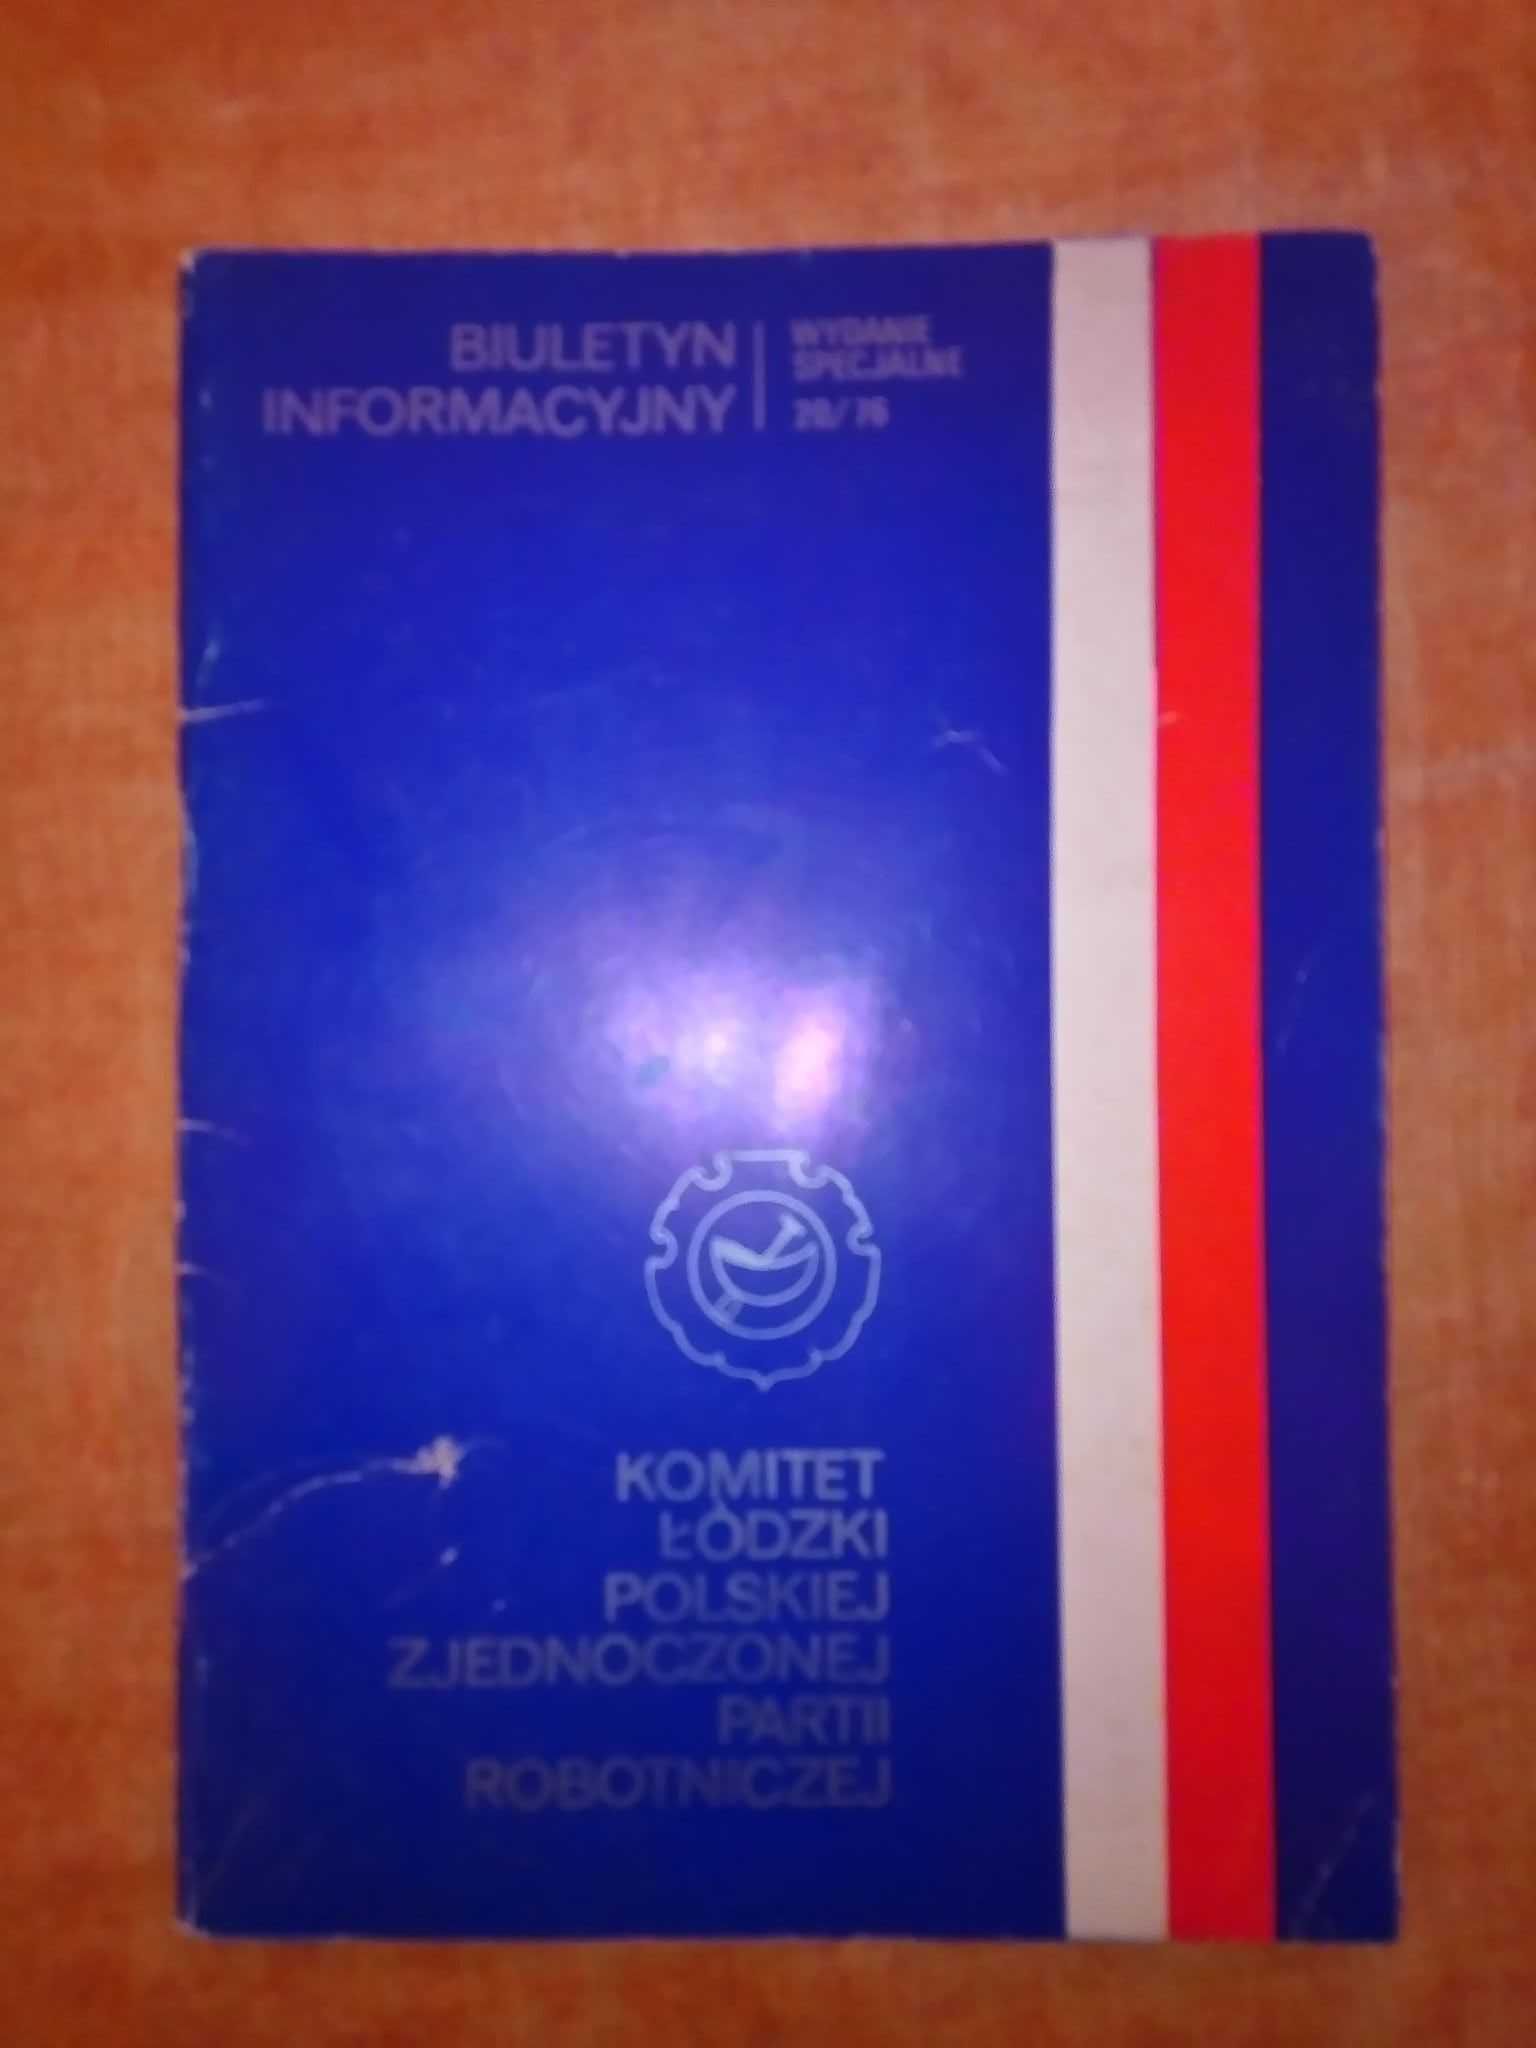 Biuletyn informacyjny Komitet Łódzki Polskiej Zjednoczonej Partii 1976